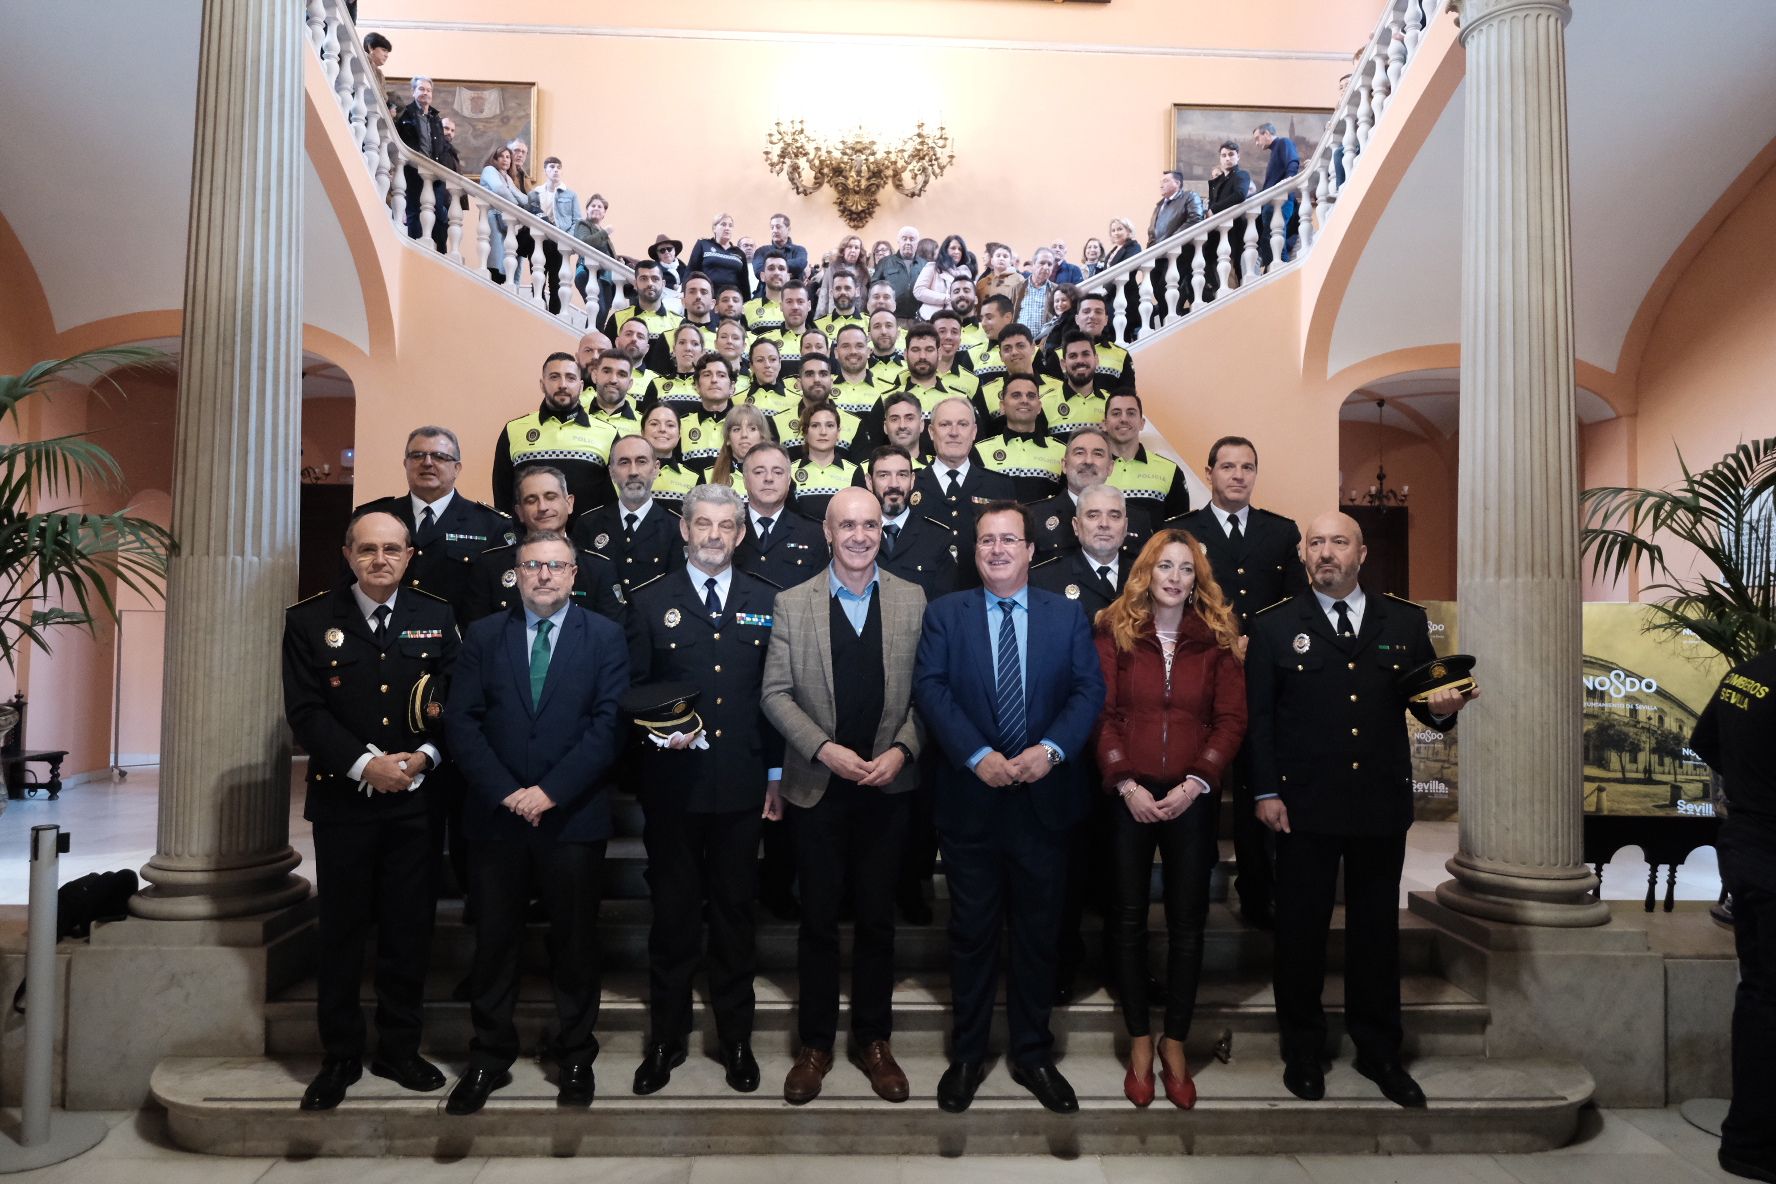 El Ayuntamiento de Sevilla oferta 123 puestos de trabajo: bomberos, policías, administrativos...